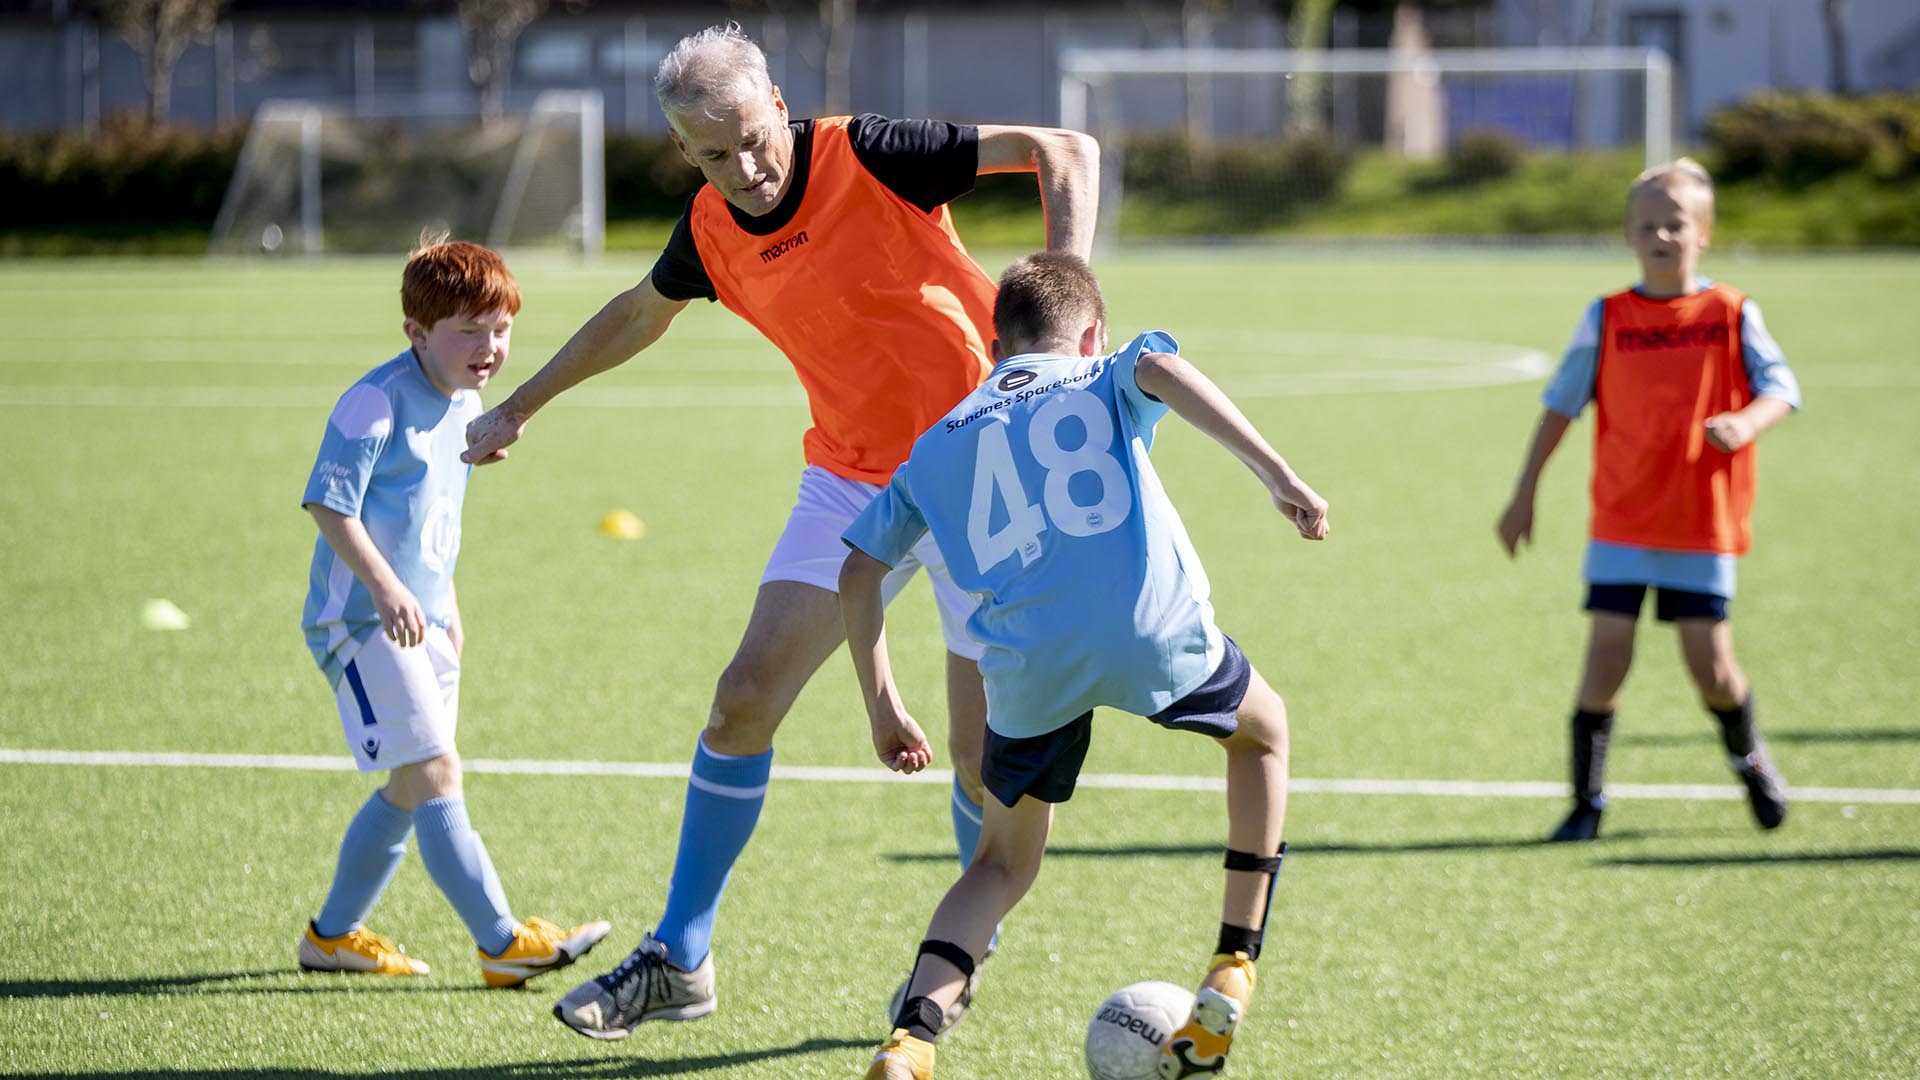 Statsminister Jonas Gahr Støre i kamp mot unge, lovende fotballspillere i Sandnes. Foto: Javad Parsa / NTB